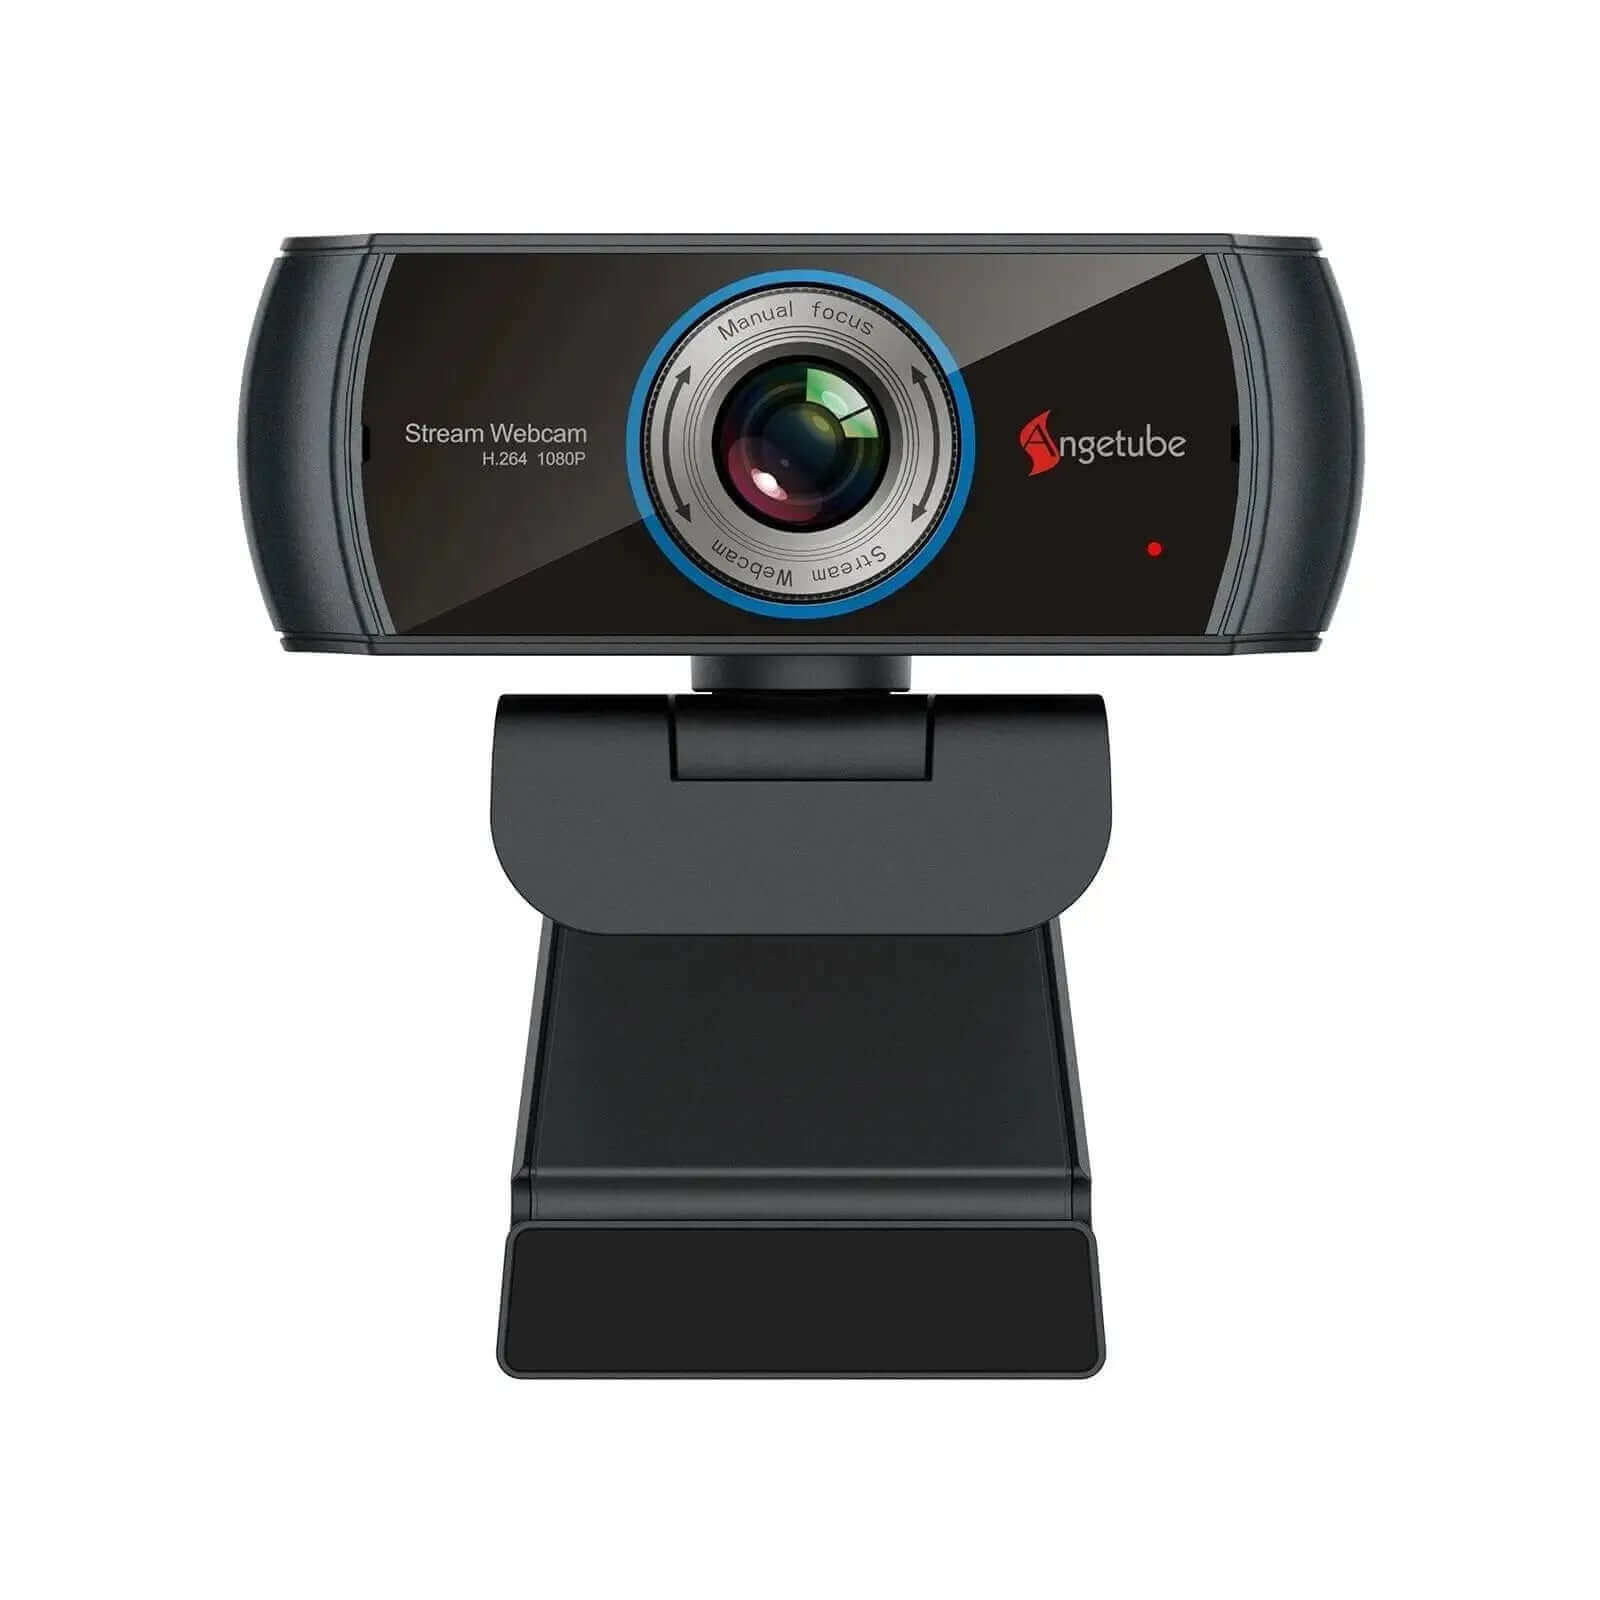 Webcam WE full HD grand angle